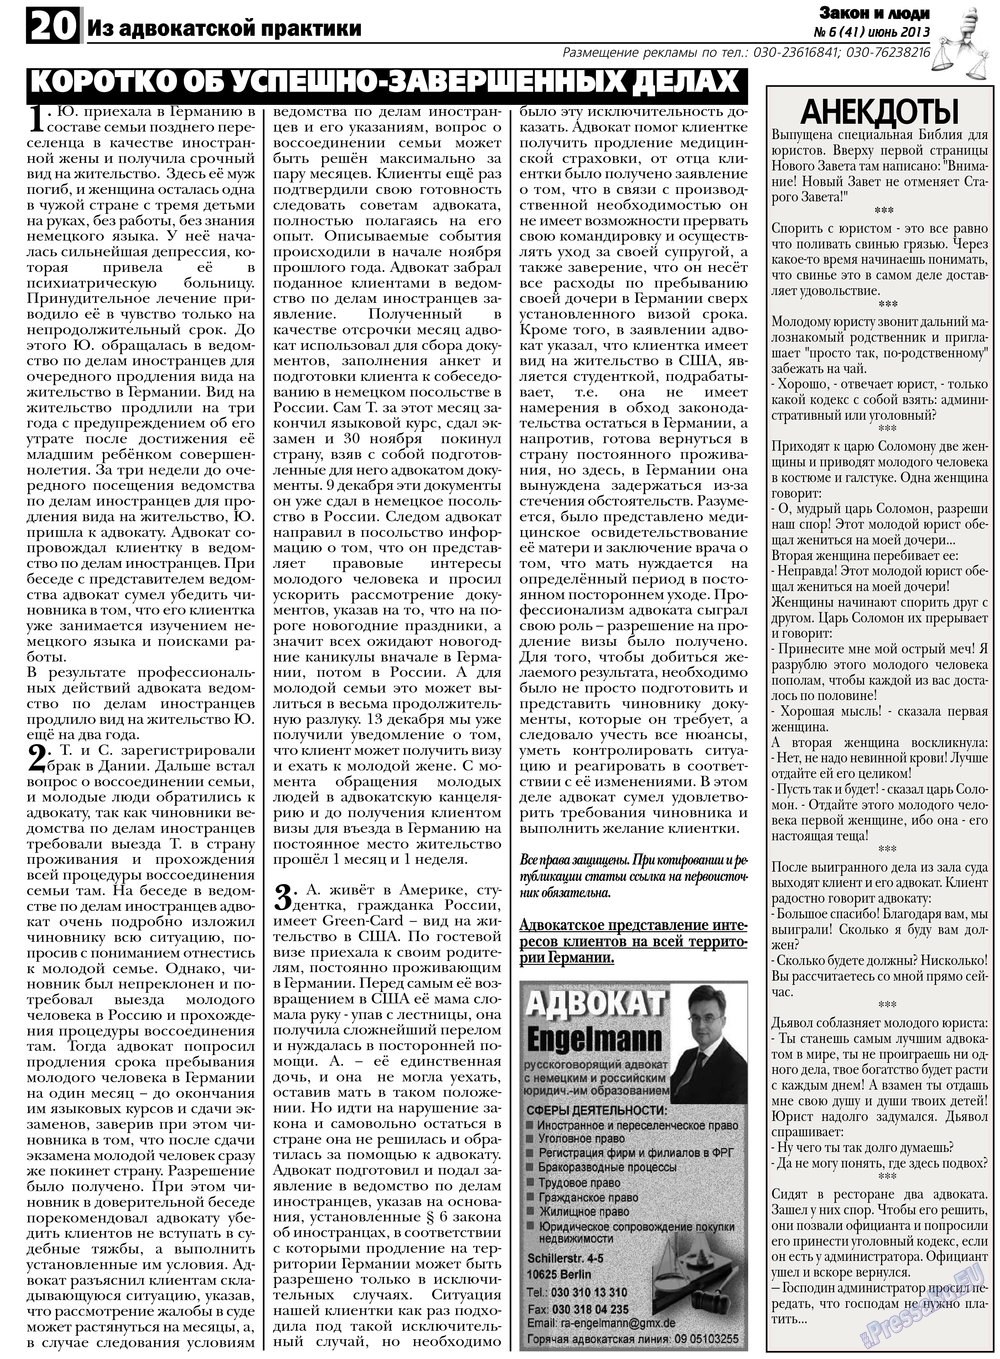 Закон и люди, газета. 2013 №6 стр.20